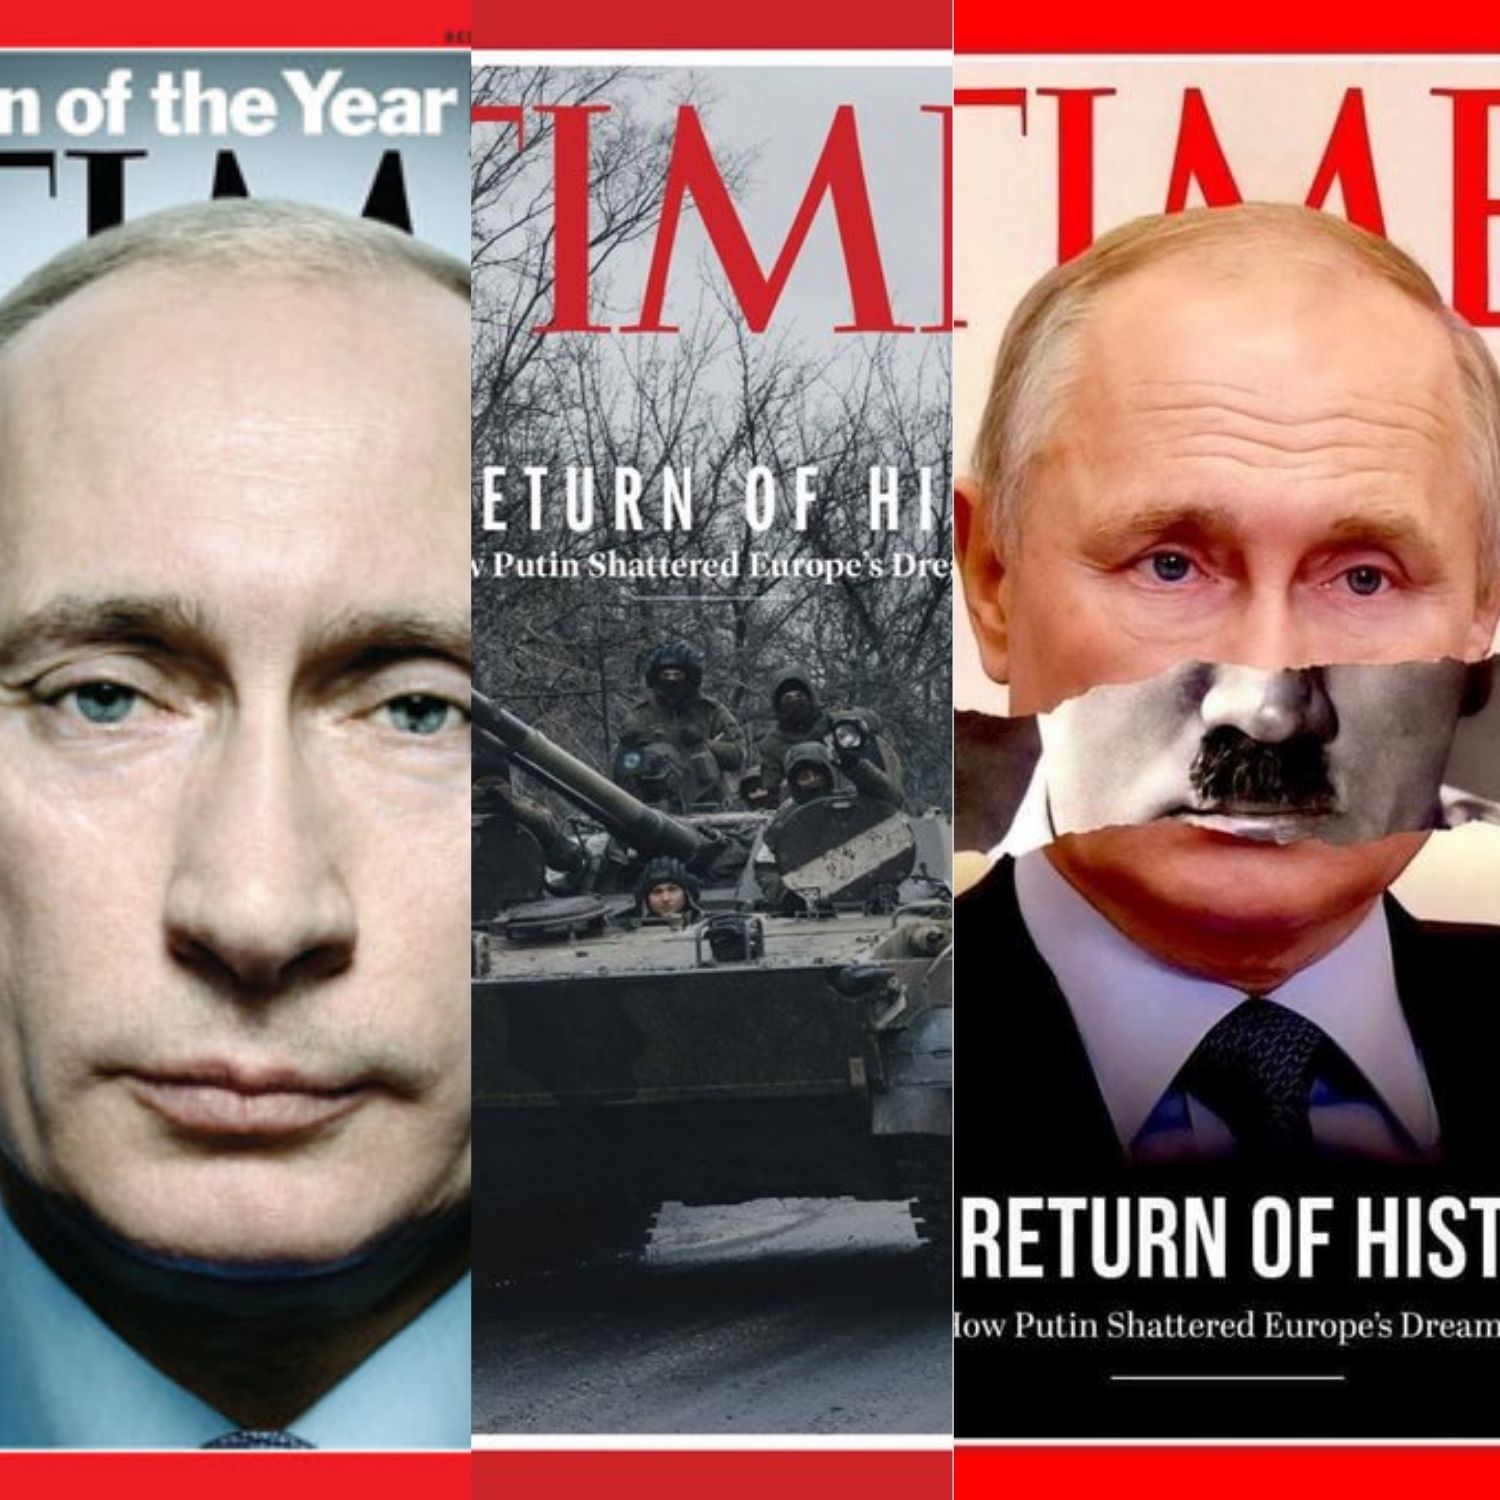 Putin según 'Time': De persona del año a destrozar los sueños de Europa